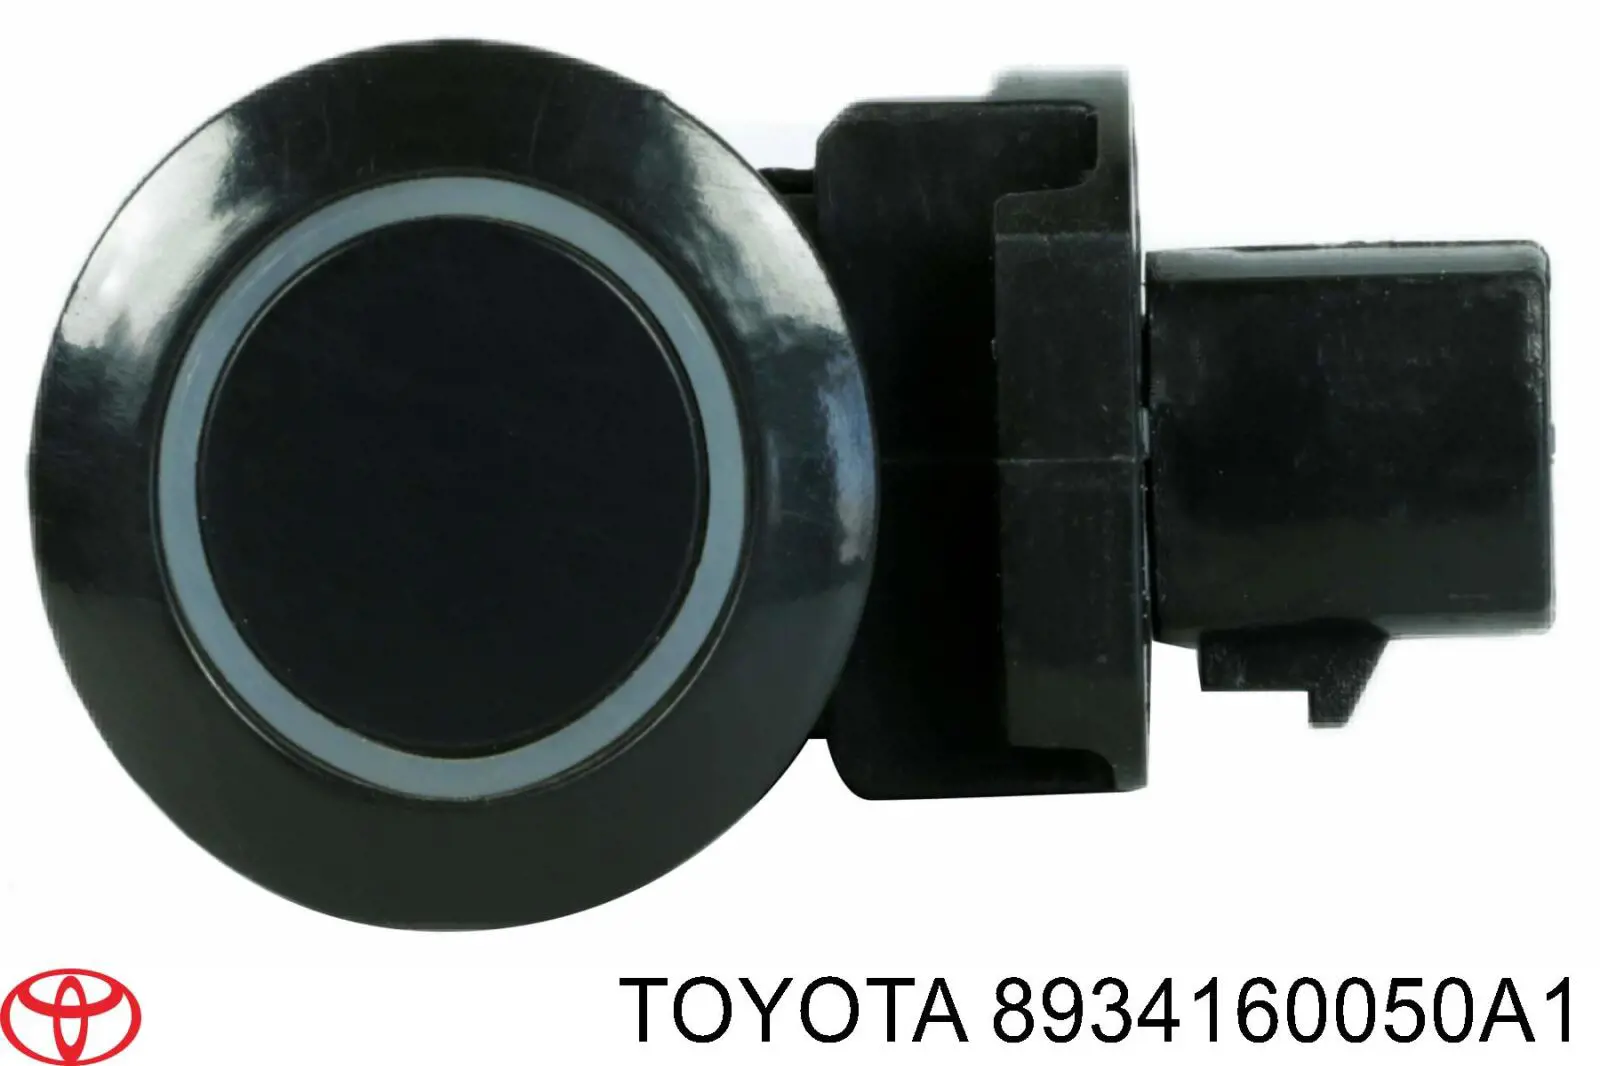 8934160050C1 Toyota датчик сигнализации парковки (парктроник задний боковой)